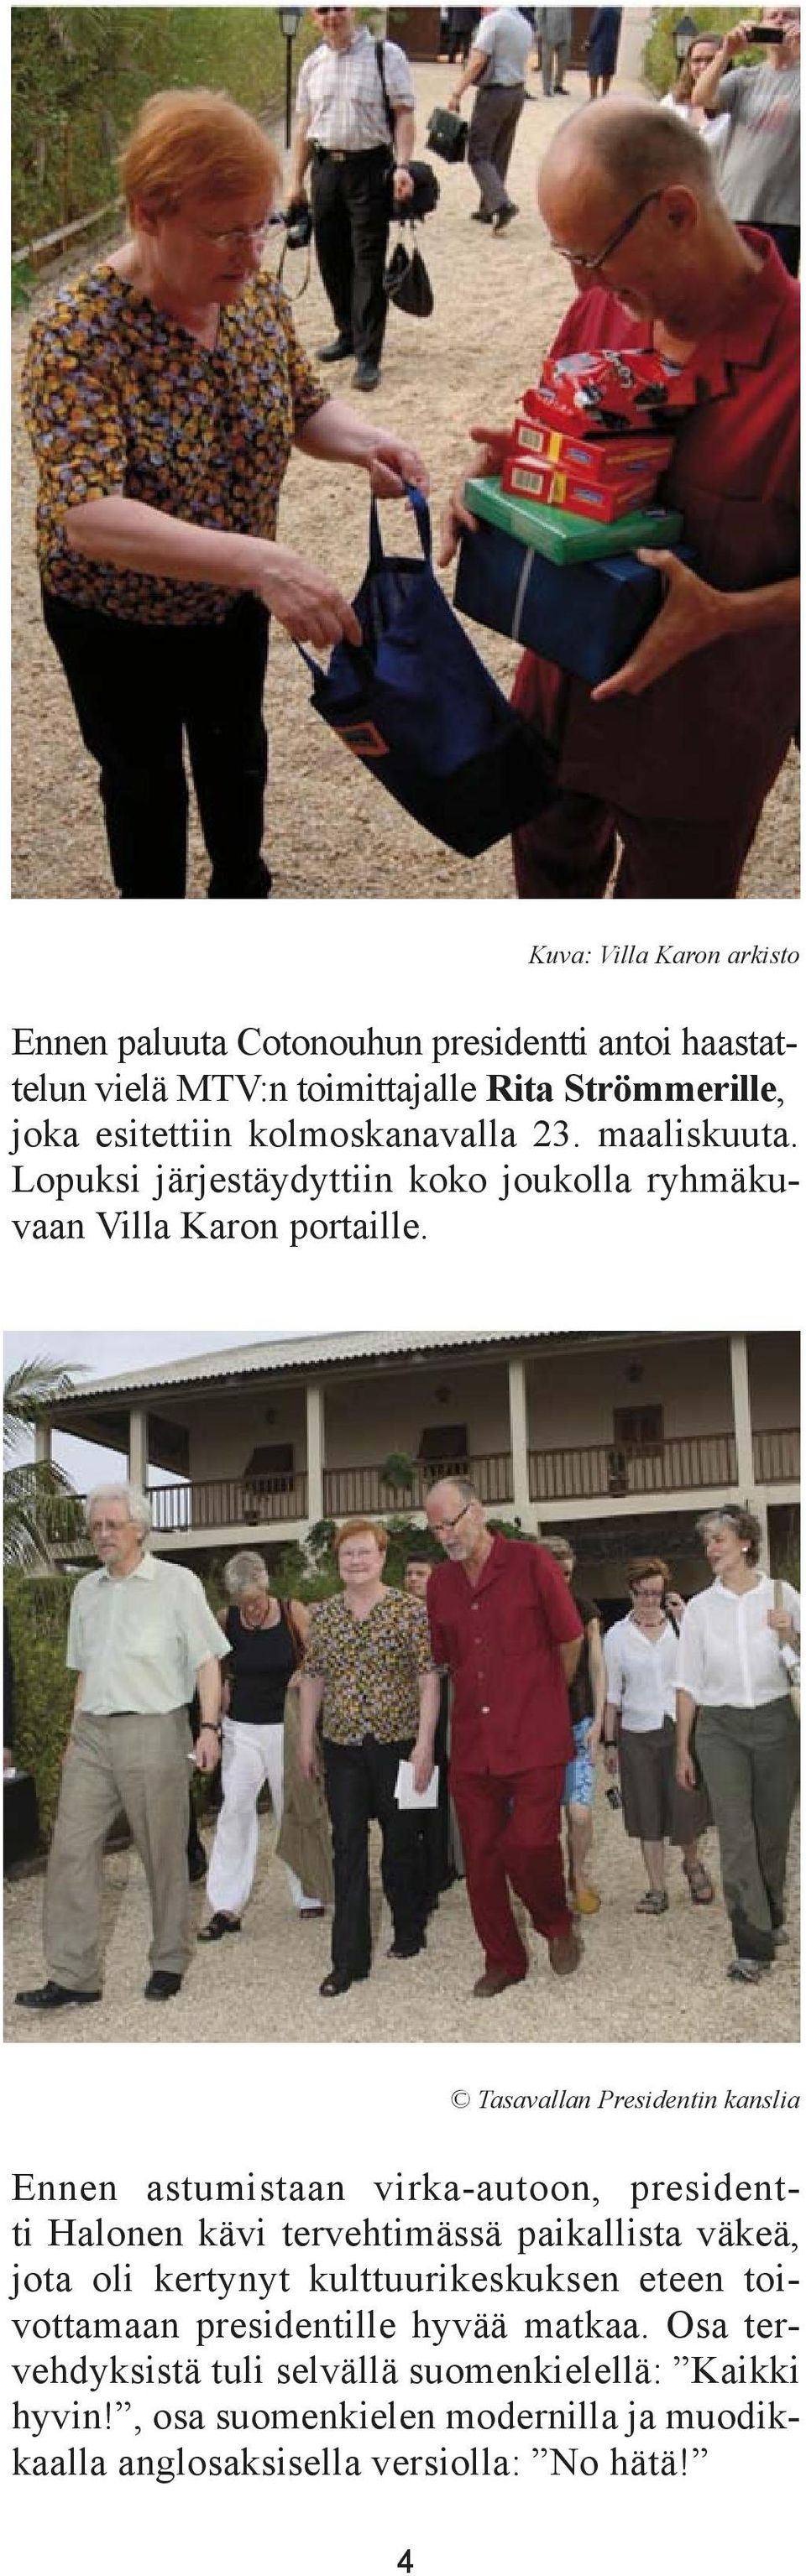 Tasavallan Presidentin kanslia Ennen astumistaan virka-autoon, presidentti Halonen kävi tervehtimässä paikallista väkeä, jota oli kertynyt